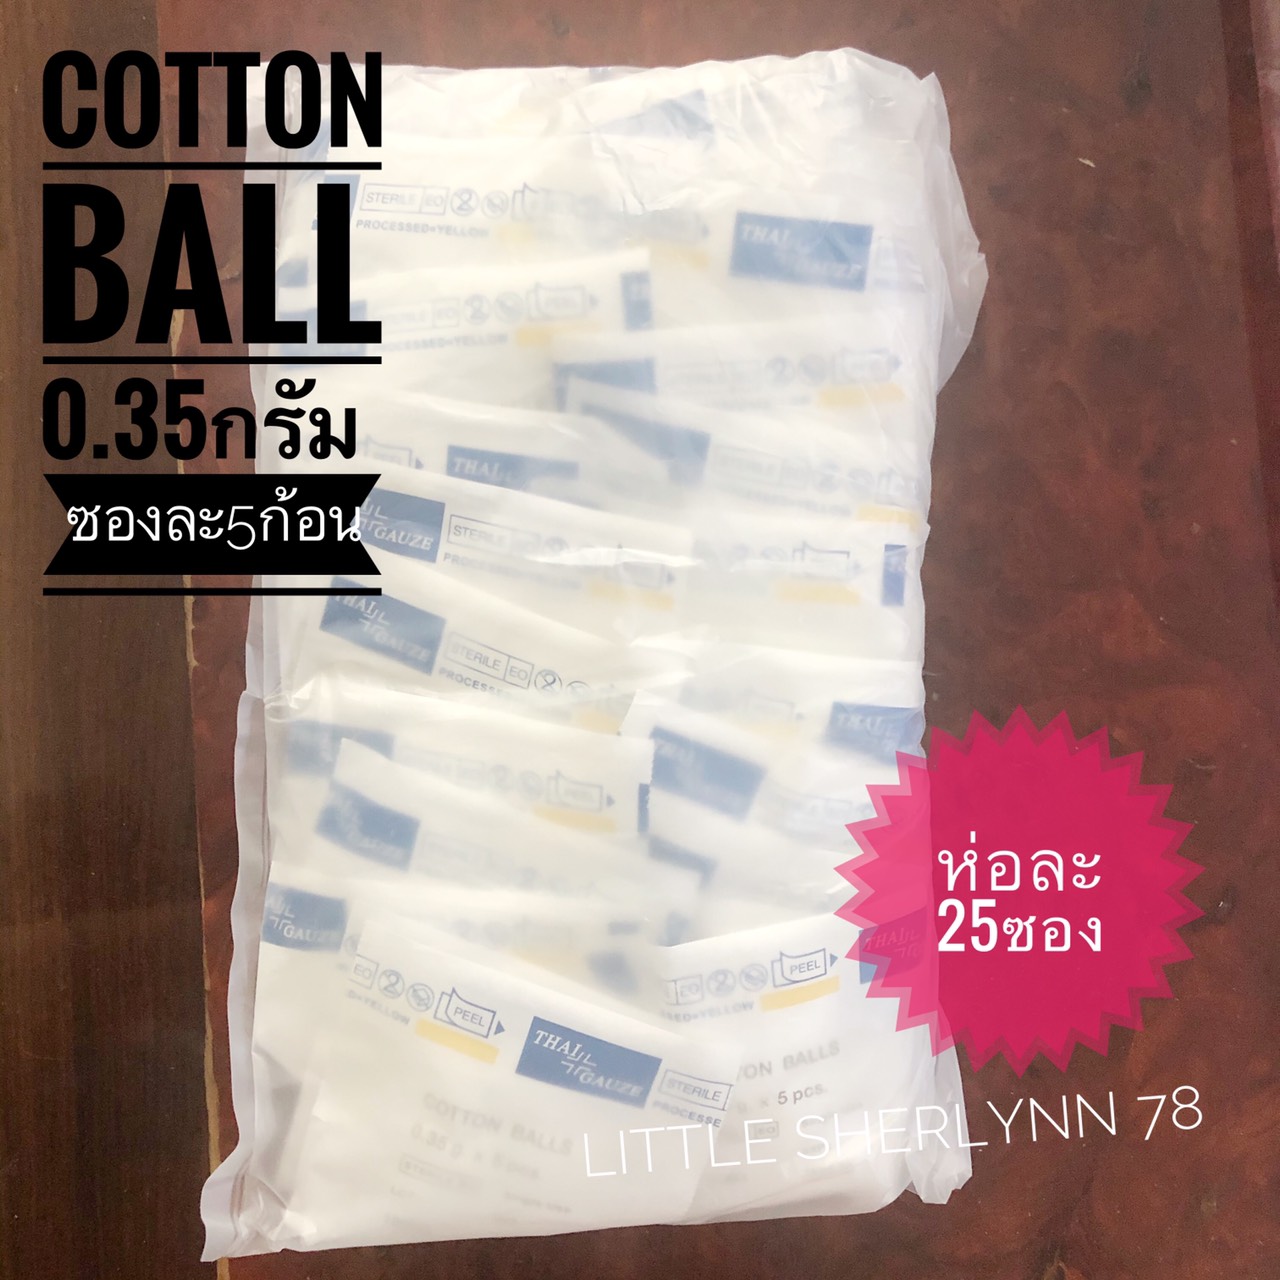 สำลีเช็ดตาเด็ก Cotton ball สำลีก้อนสเตอไรด์Thai Guaze ขนาด0.35กรัม ห่อละ25ซอง (ซองละ 5 ก้อน) ราคาถูก!!!